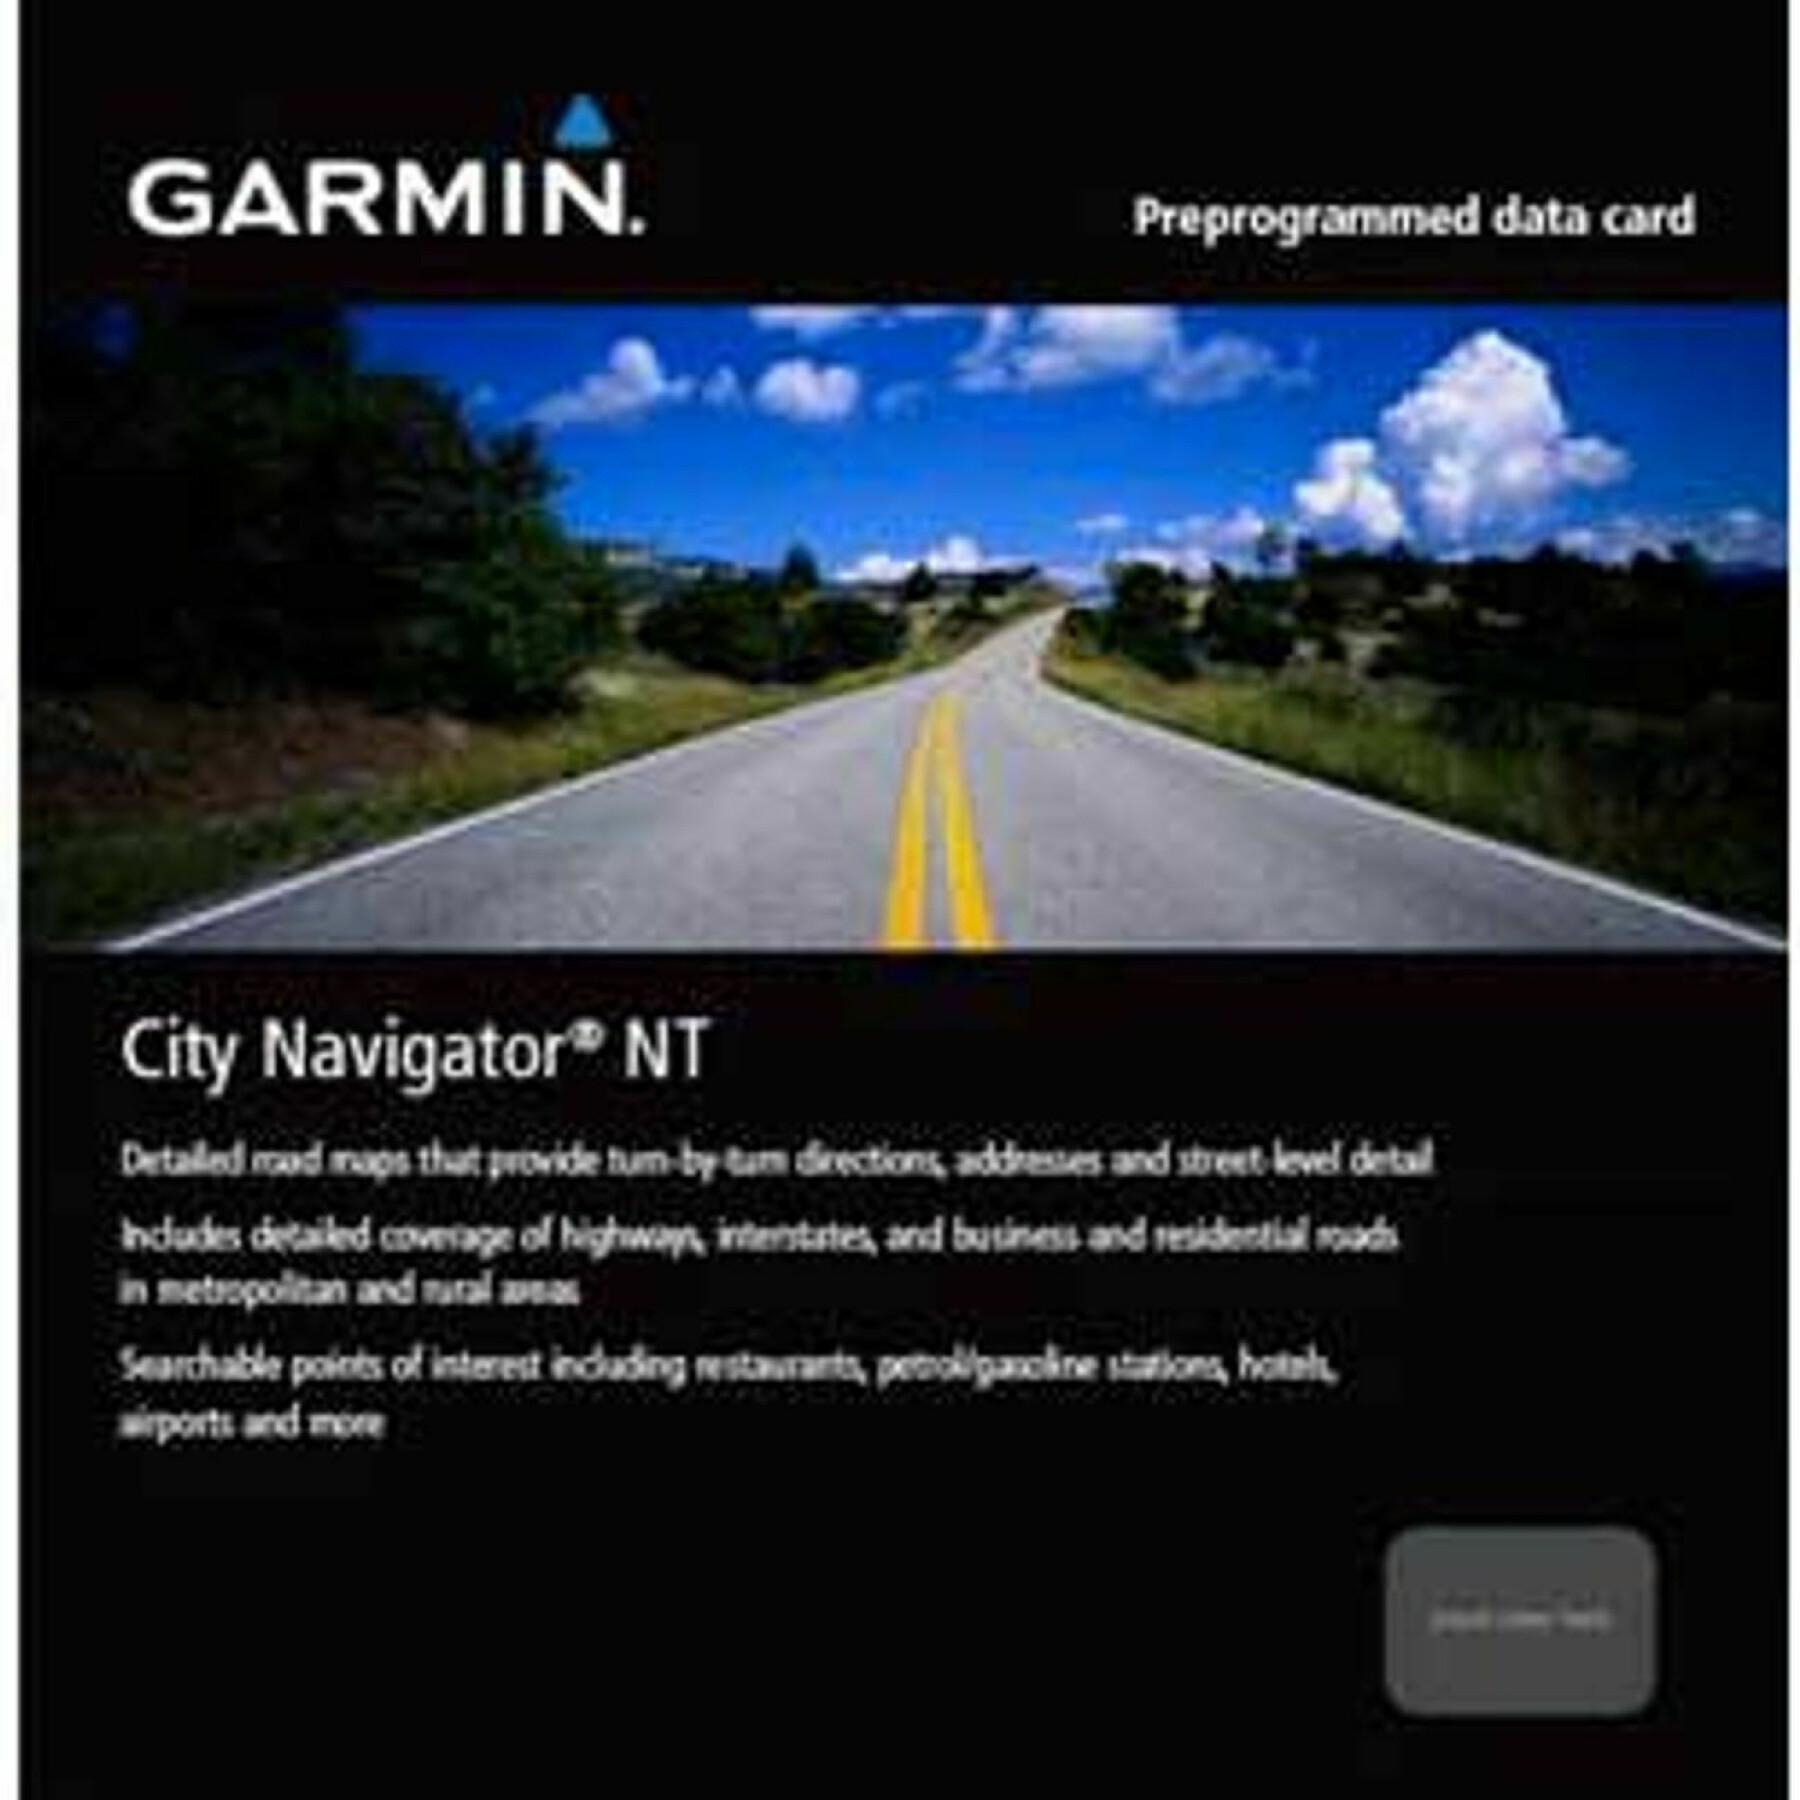 Card Garmin city navigator Europe nt-spain/portugal microsd/sd card